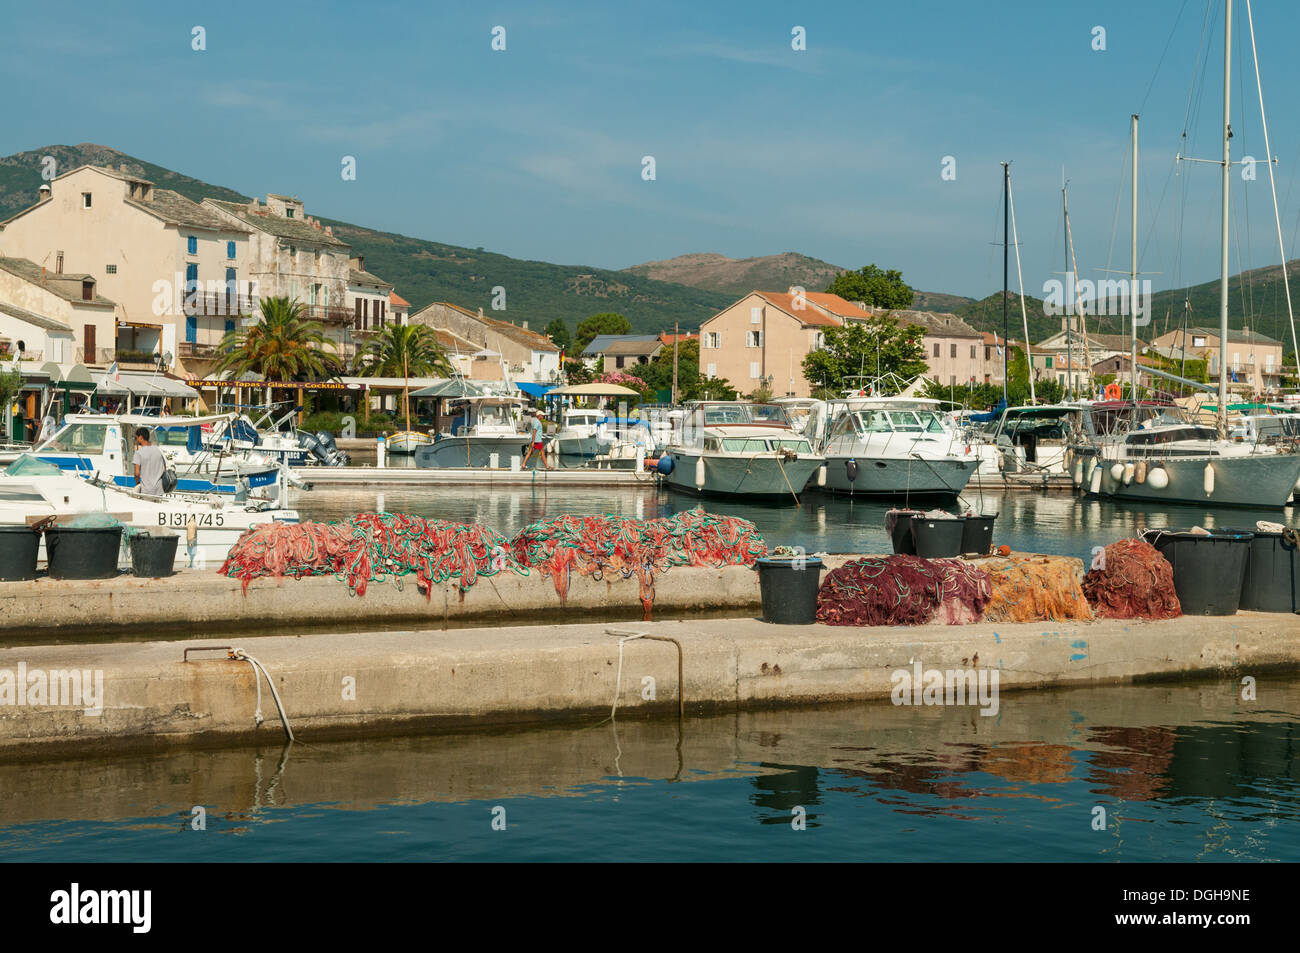 Le port de plaisance de Porticciolo, Cap Corse, Corse, France Banque D'Images